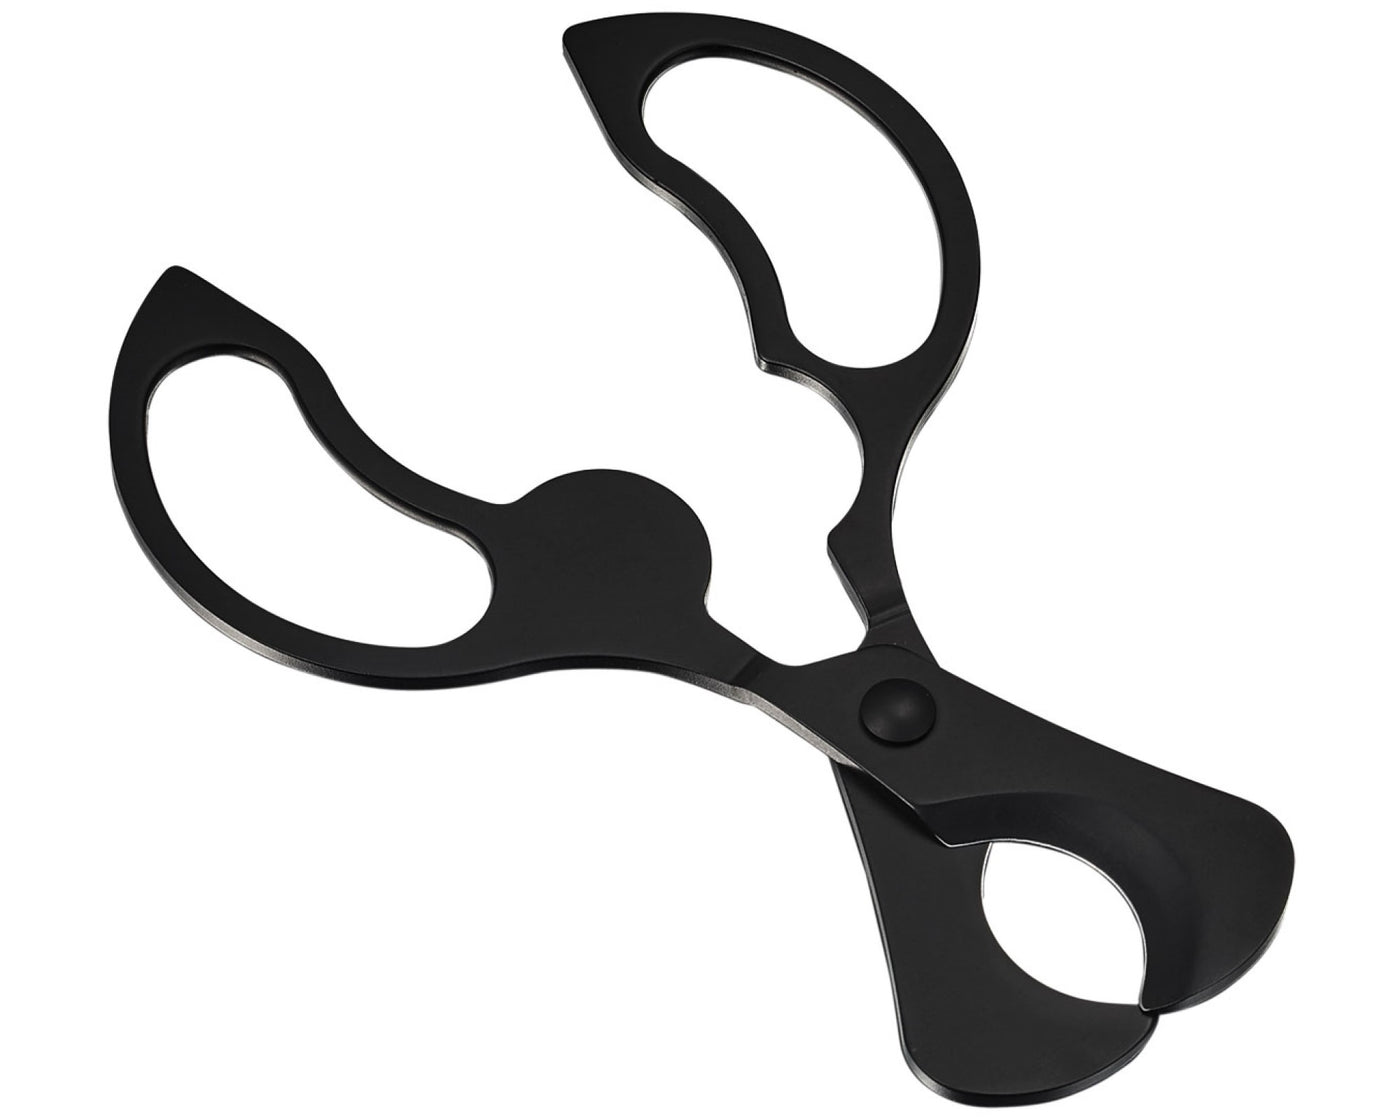 Matte Black Scissors